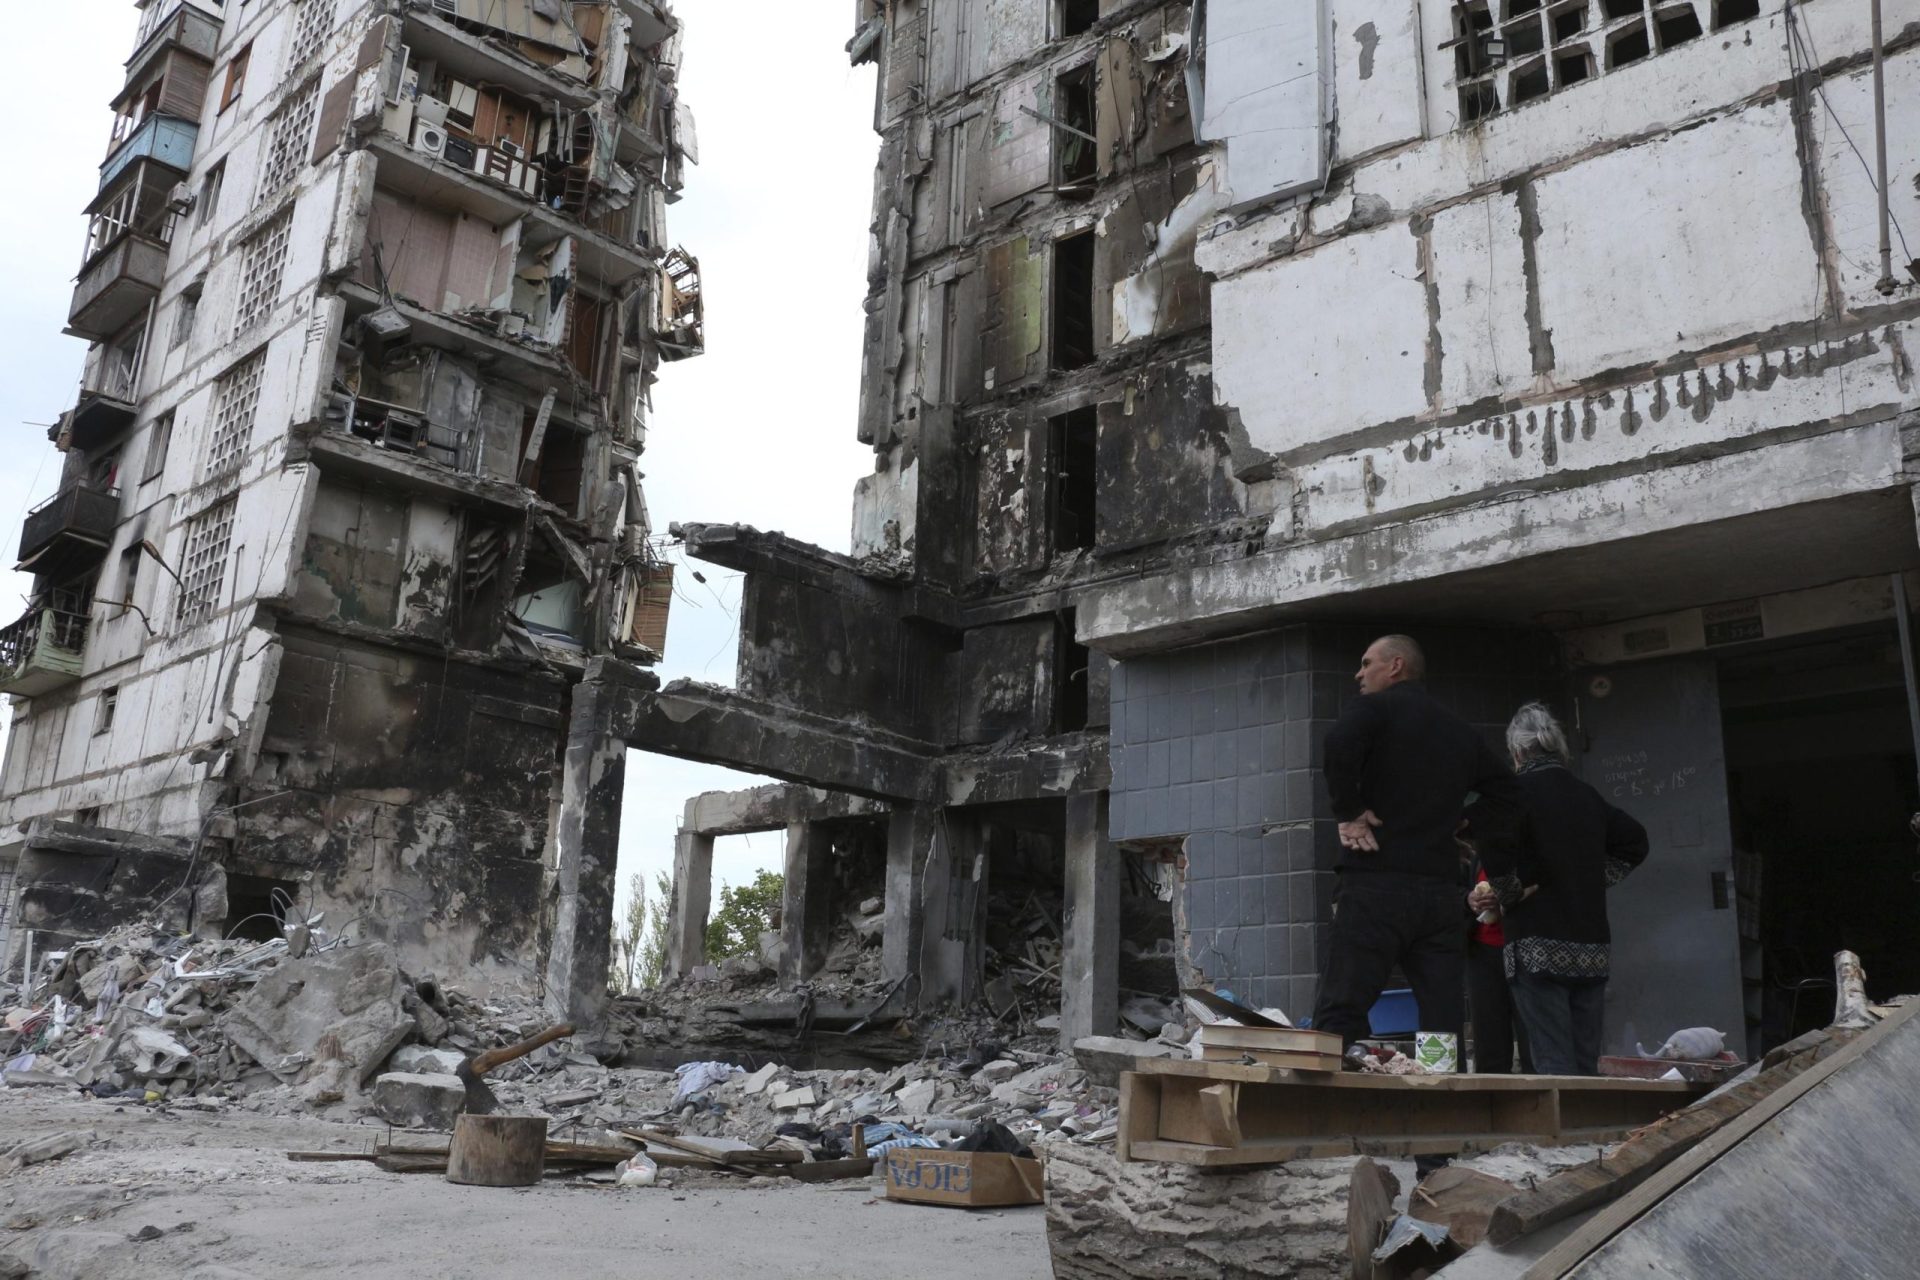 Ucrania: los rusos se retiran de Kharkiv y avanzan hacia el este